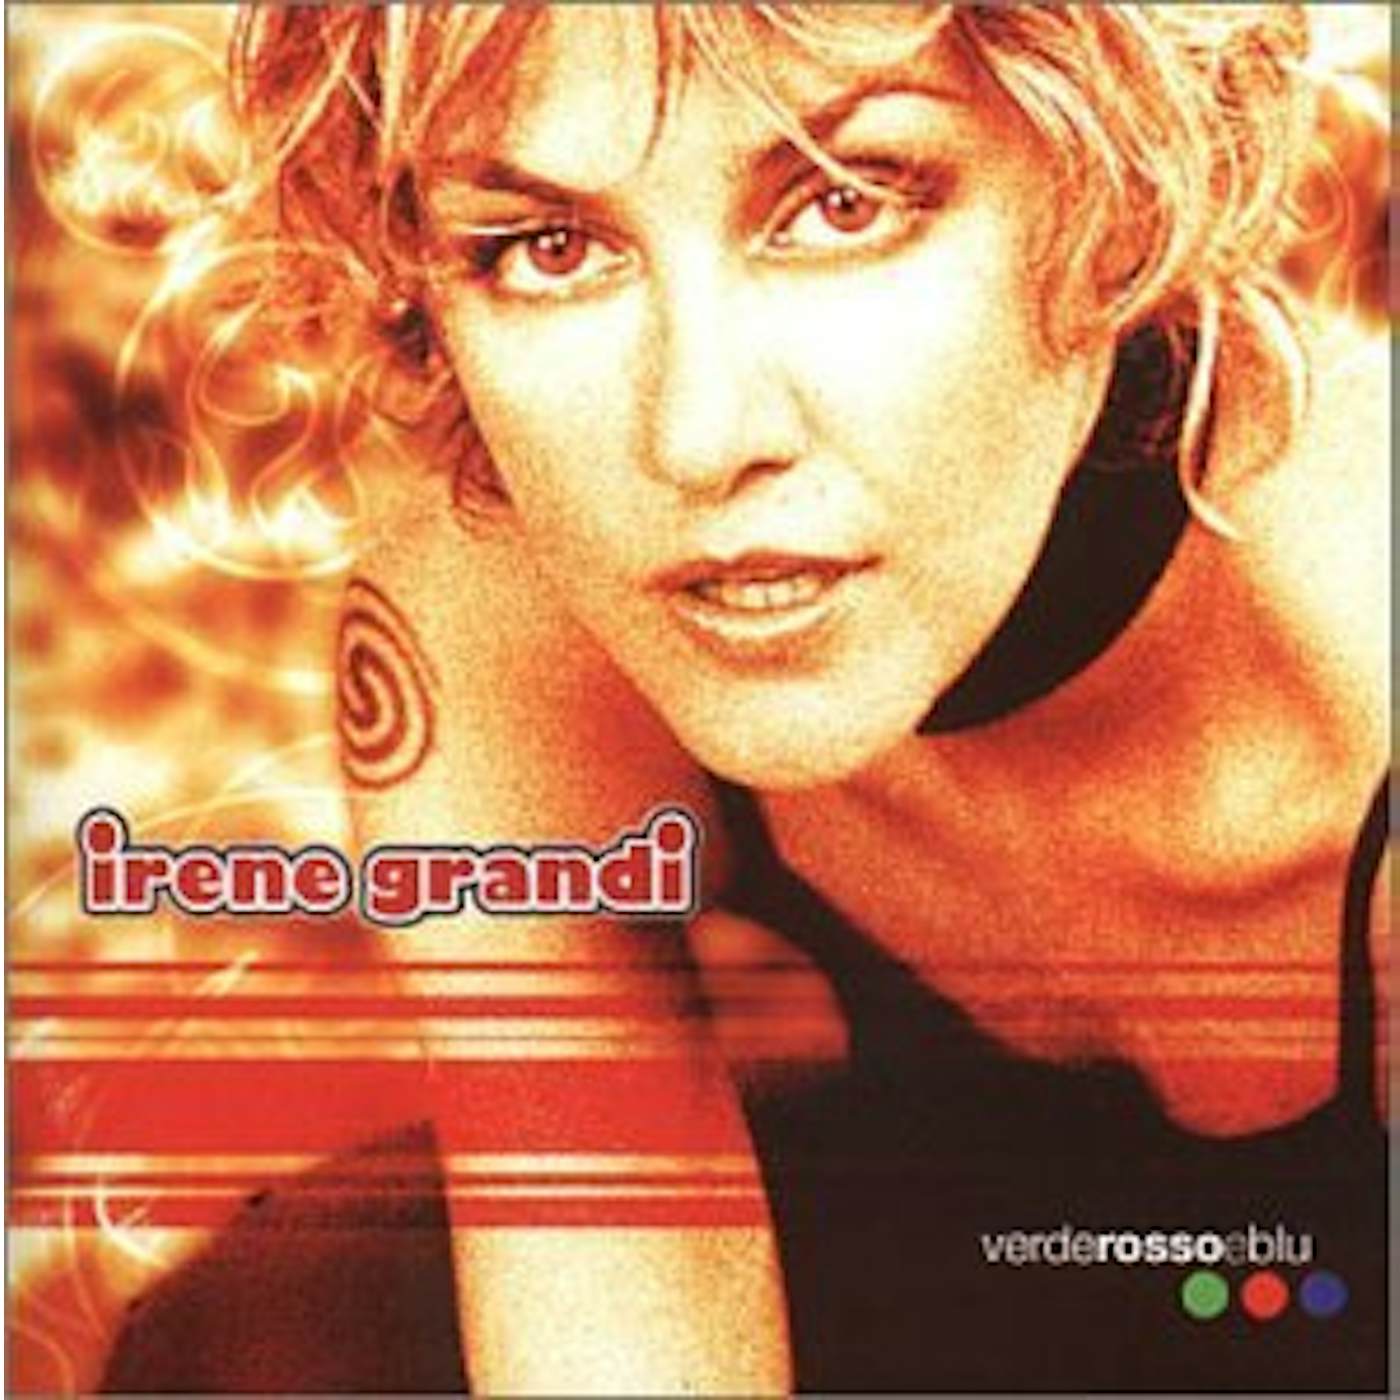 Irene Grandi VERDEROSSOEBLU CD